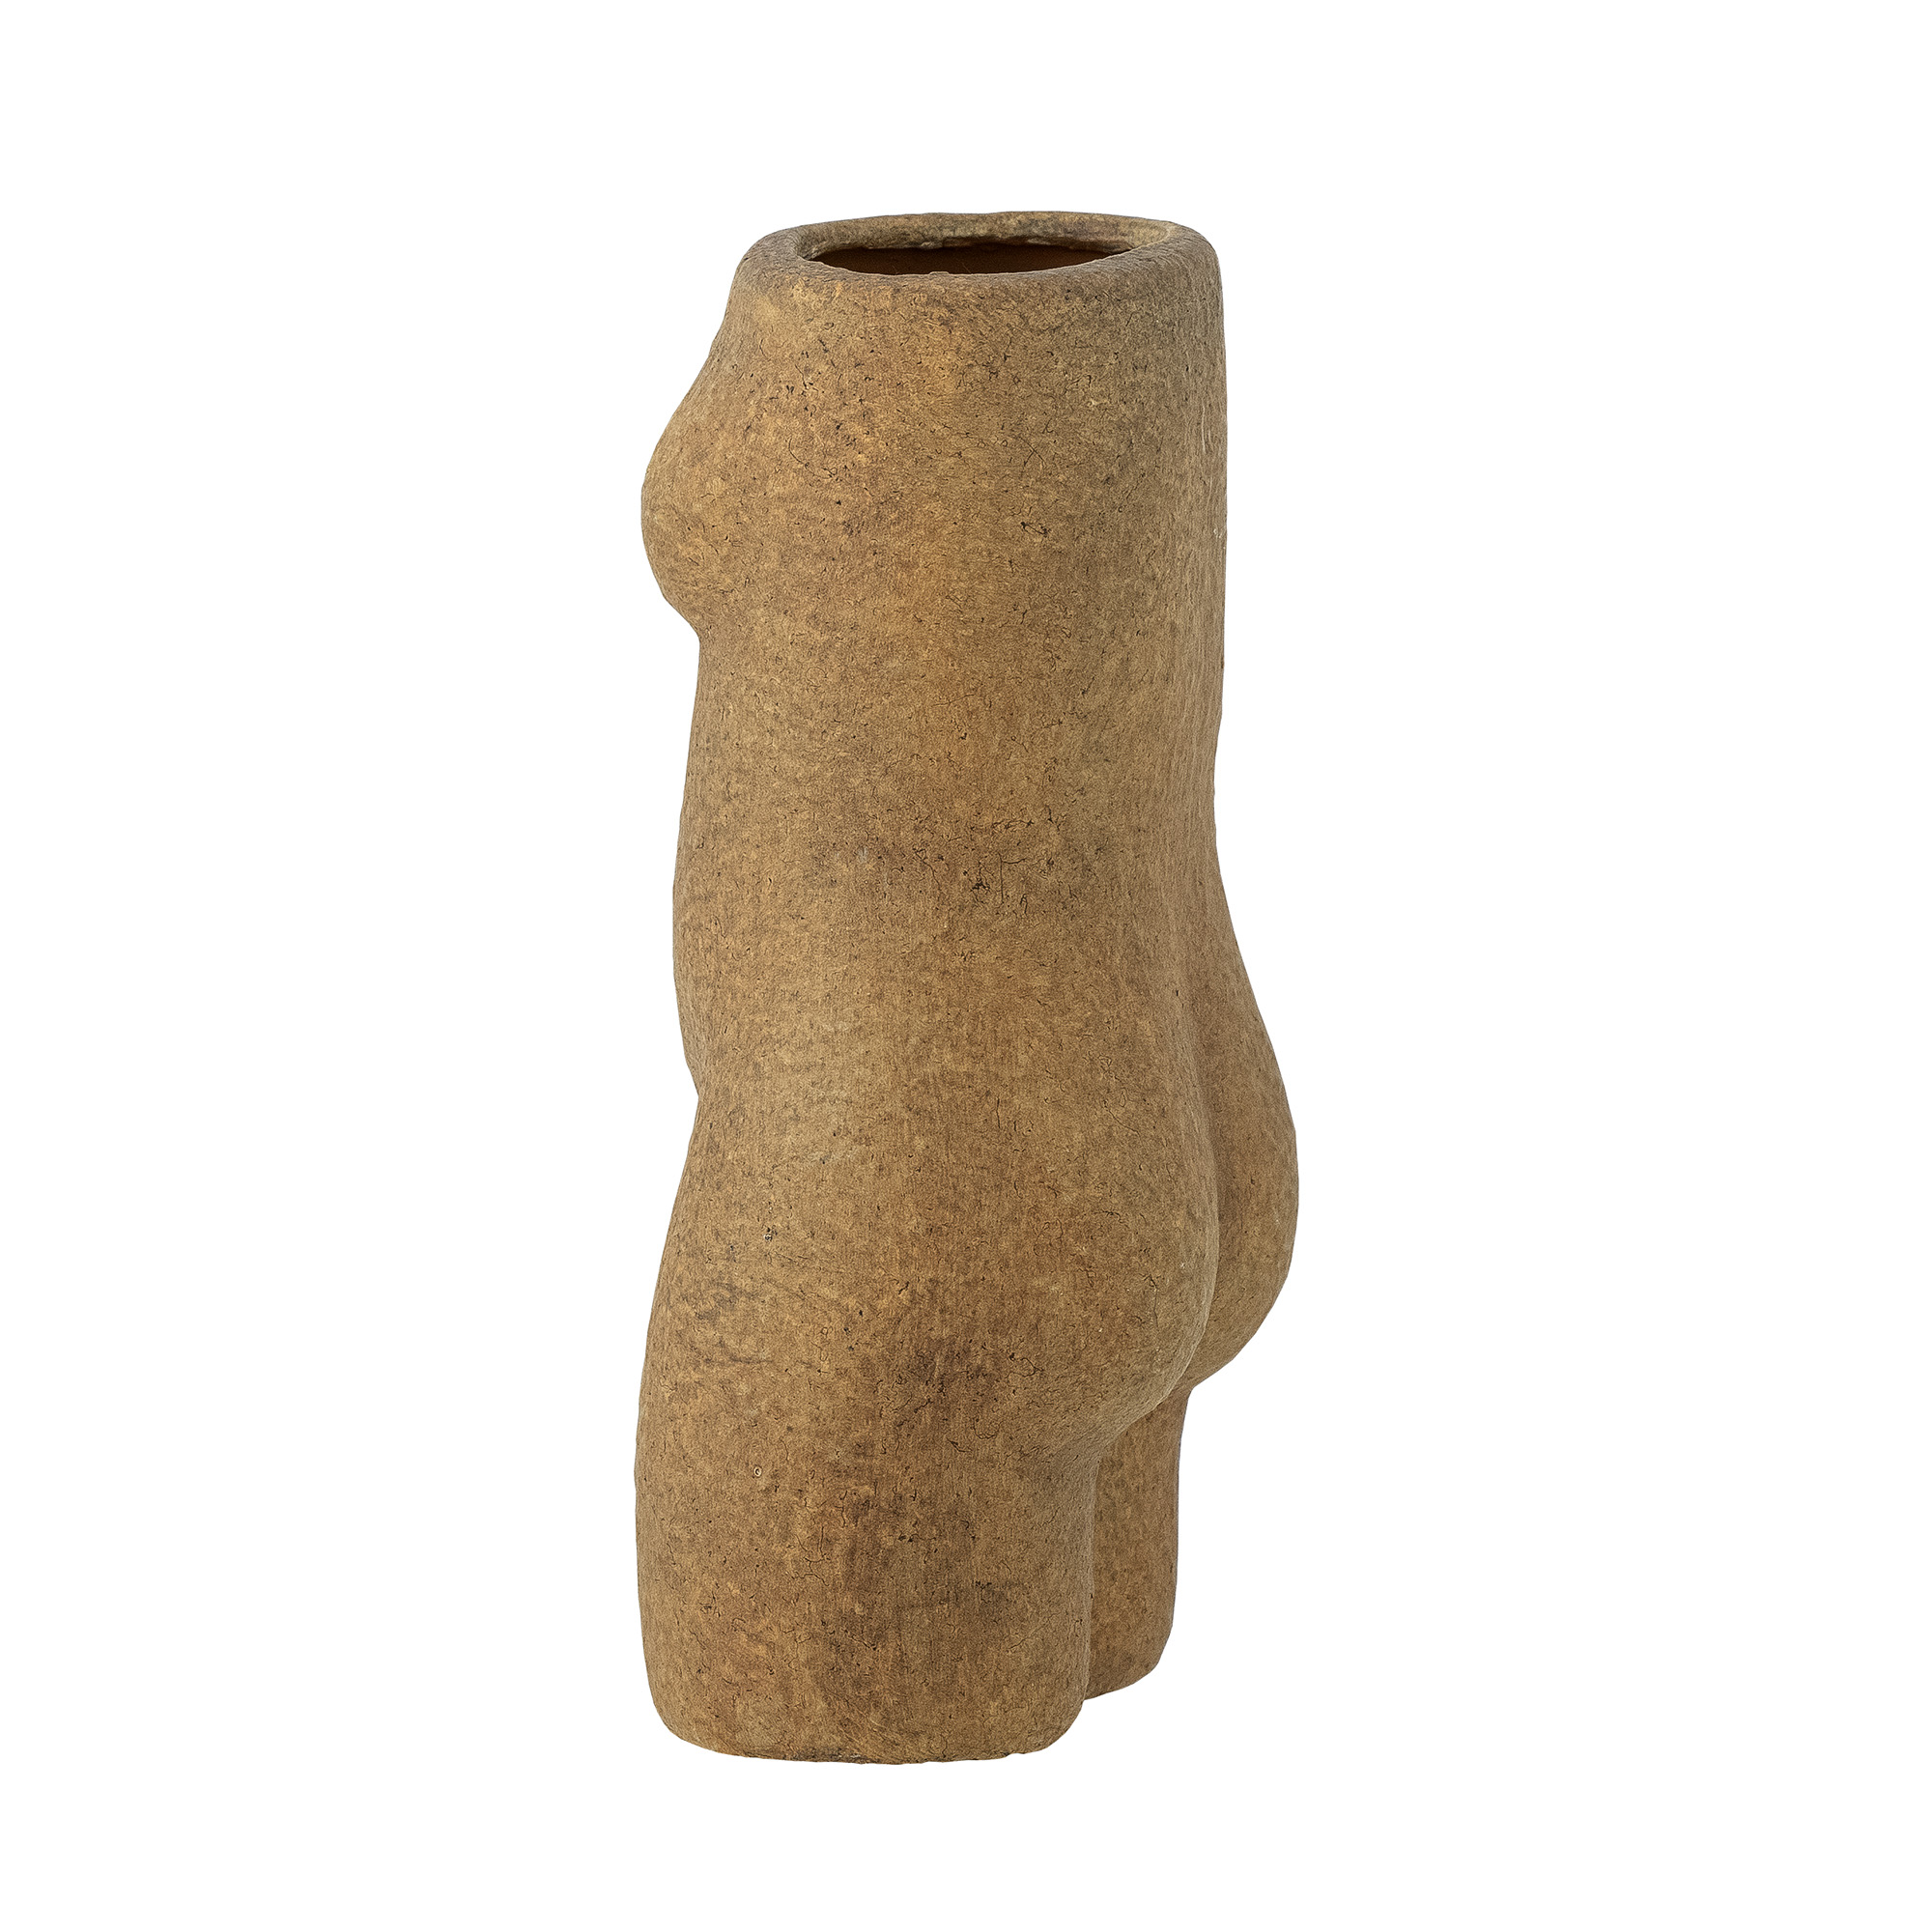 Bloomingville Deko-Vase Emeli 10x16x6cm braun